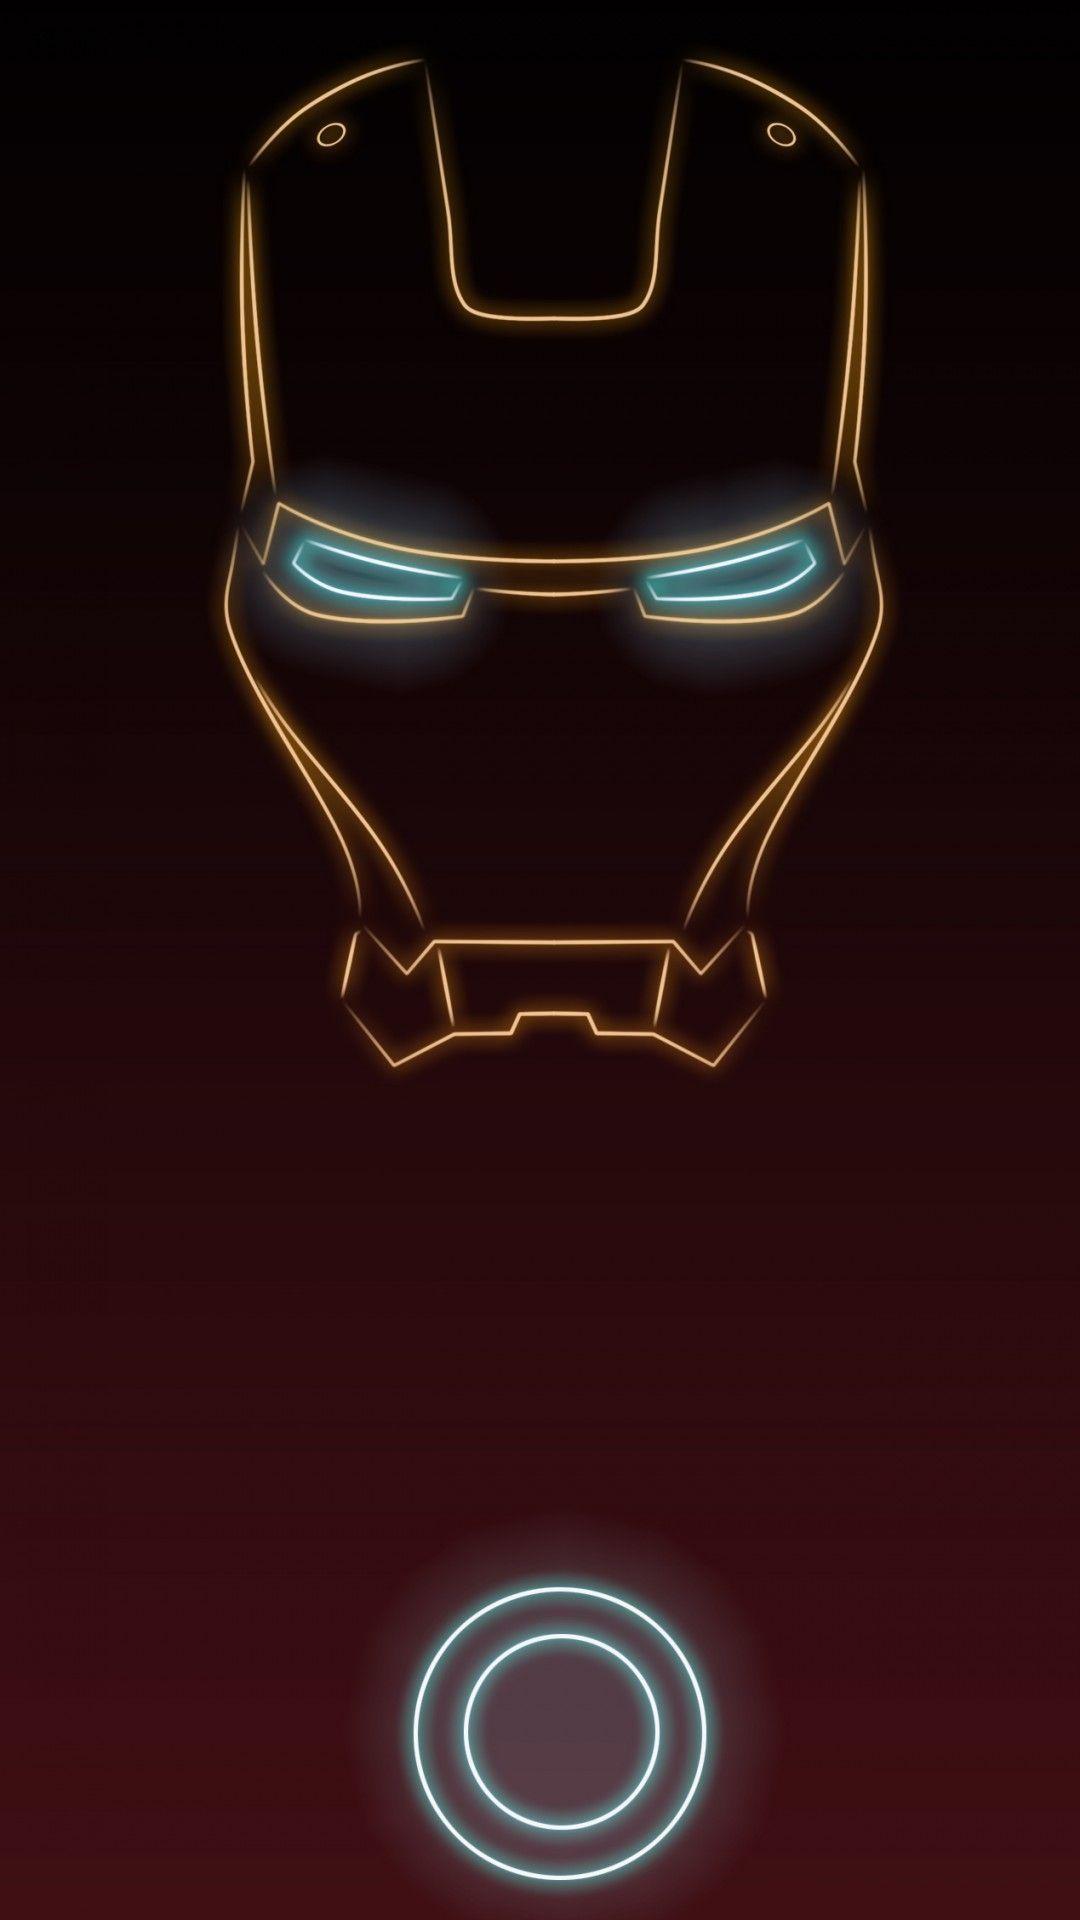 Ánh sáng tia laser sẽ làm cho bộ ảnh nền Iron Man của bạn trở nên sống động và hấp dẫn hơn bao giờ hết! Hình ảnh chiếc áo giáp thép này với ánh sáng sắc nét và phong cách đầy đặc trưng sẽ khiến bạn cảm thấy ngạc nhiên và thích thú. Hãy tải ngay bộ ảnh nền Iron Man cho chiếc iPhone của bạn để cảm nhận được sức mạnh của siêu anh hùng này.